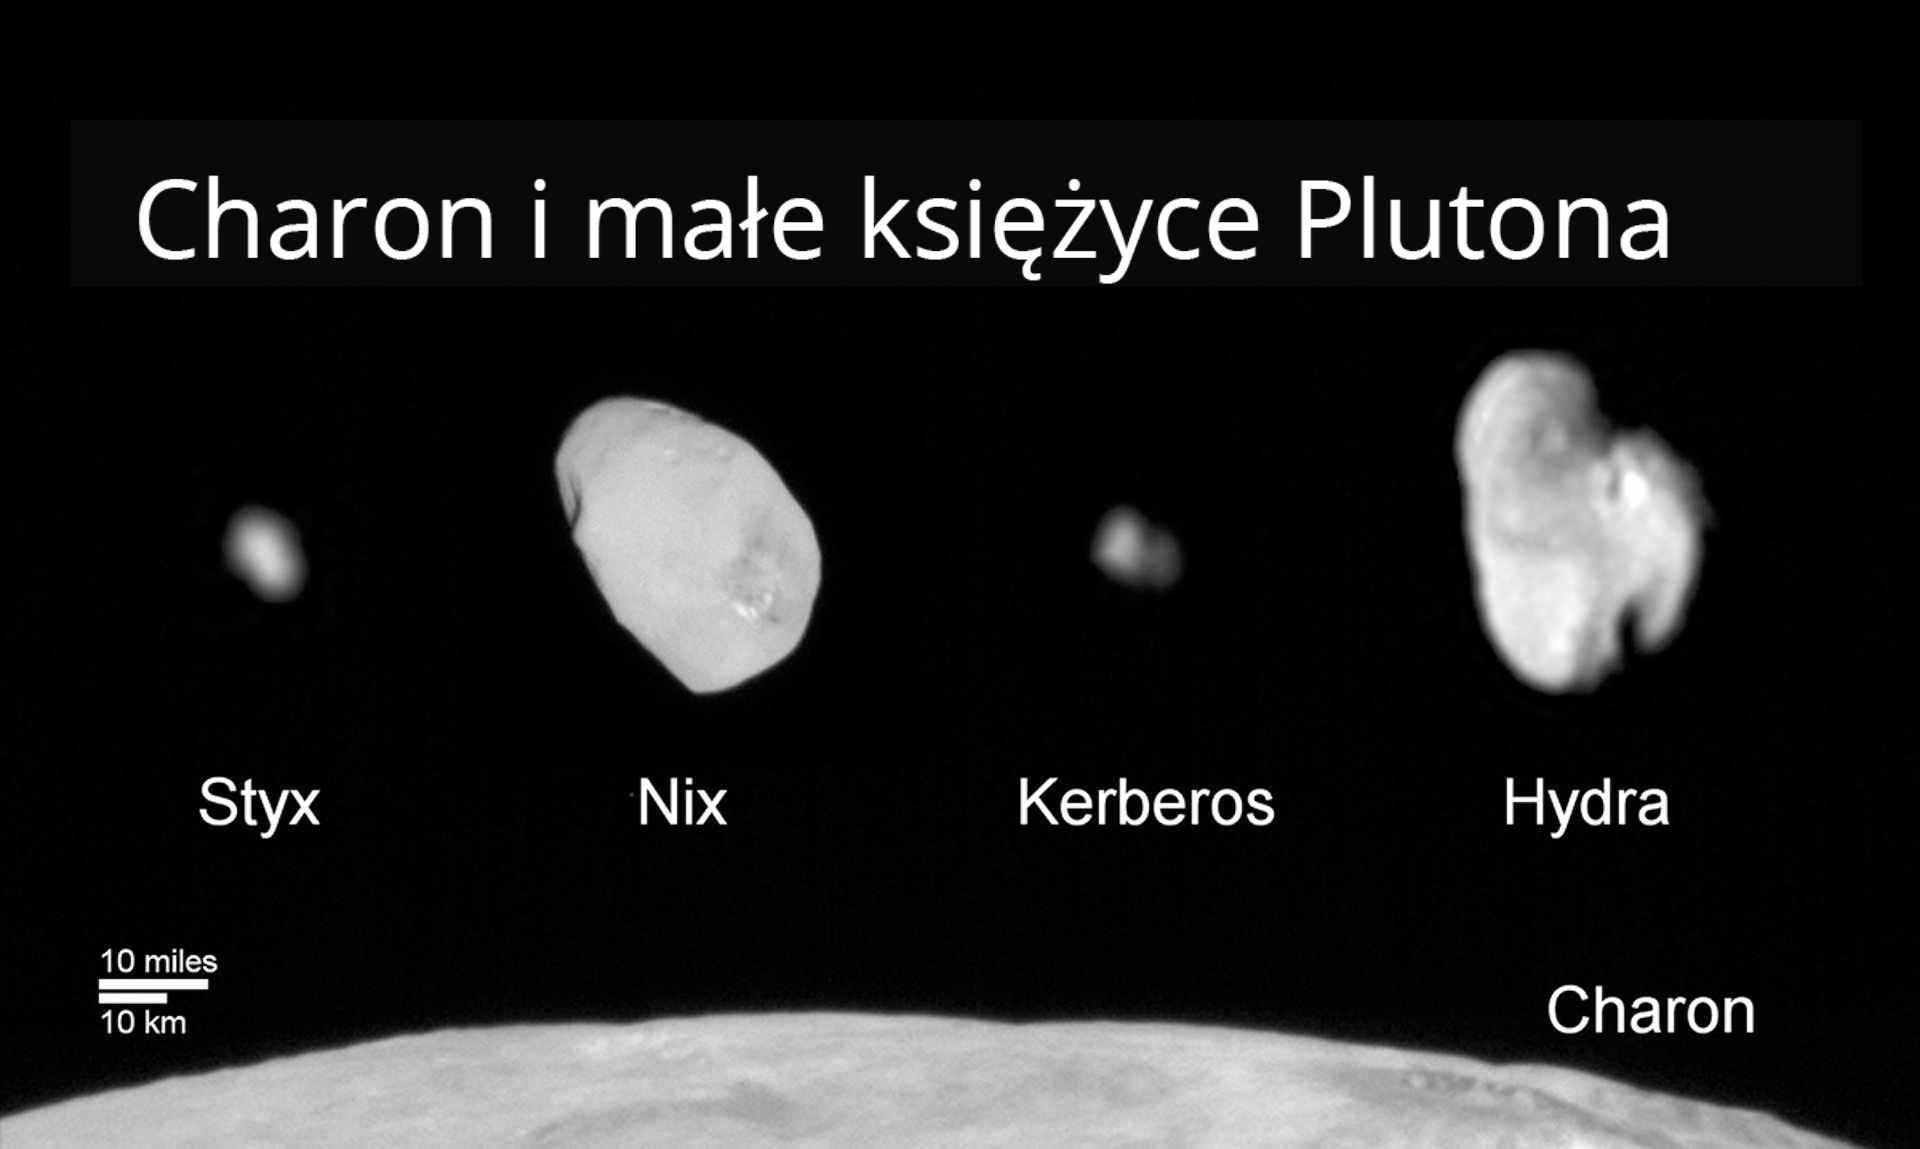 Rys. 9. Rysunek poglądowy przedstawia zestaw zdjęć księżyców Plutona. W dolnej części zdjęcia widać fragment największego księżyca - Charona. Na tle zdjęcia umieszczono tytuł "Charon i małe księżyce Plutona" i księżyce w kolejności Styx, Nix, Kerberos i Hydra. 